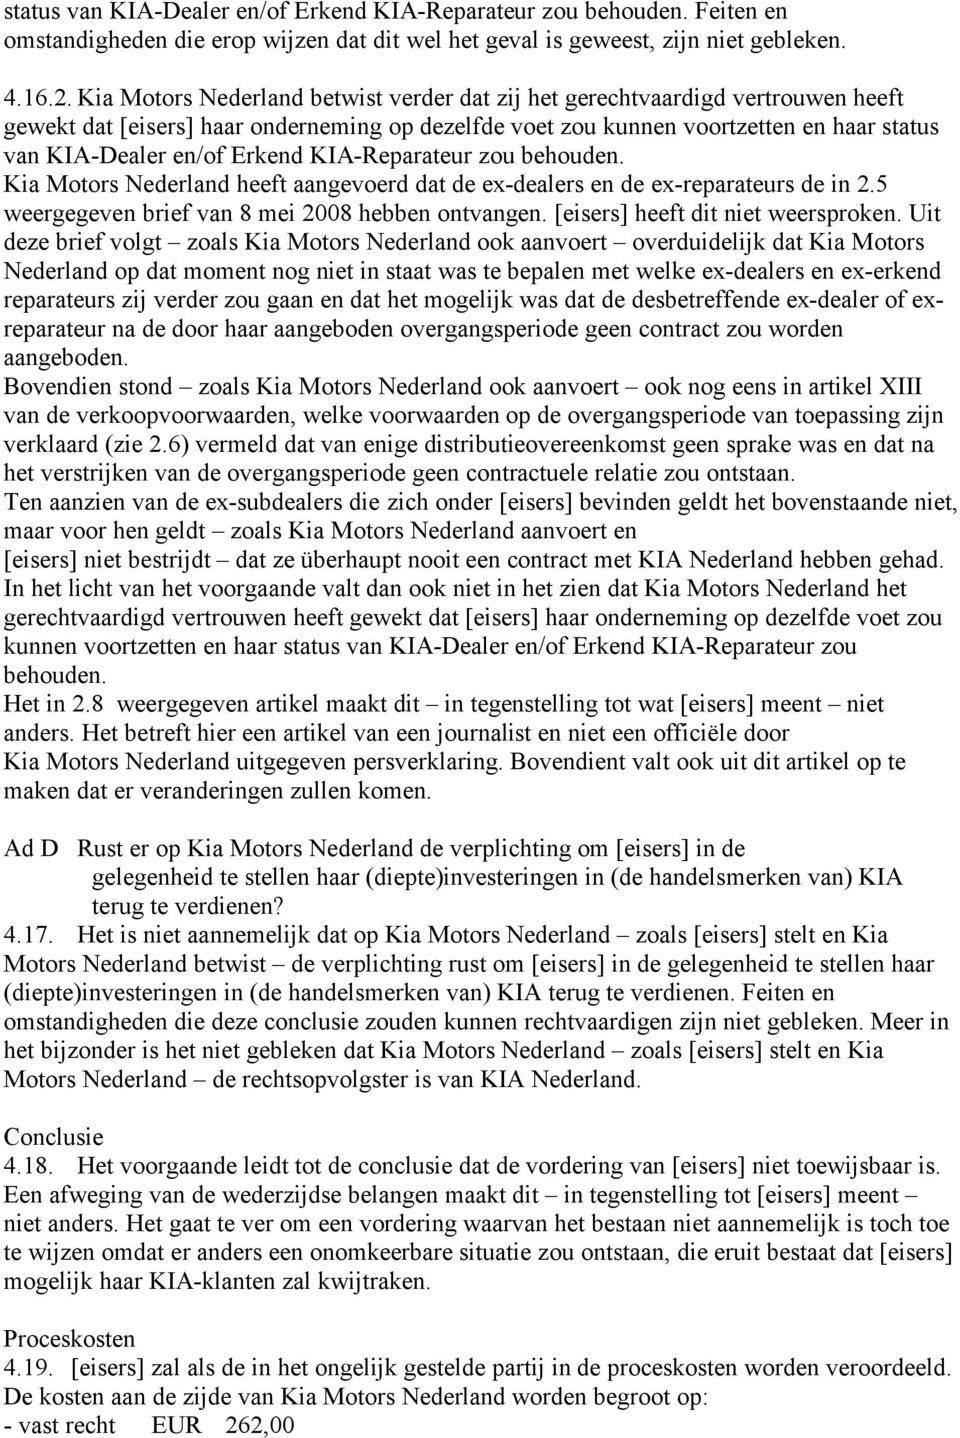 Erkend KIA-Reparateur zou behouden. Kia Motors Nederland heeft aangevoerd dat de ex-dealers en de ex-reparateurs de in 2.5 weergegeven brief van 8 mei 2008 hebben ontvangen.